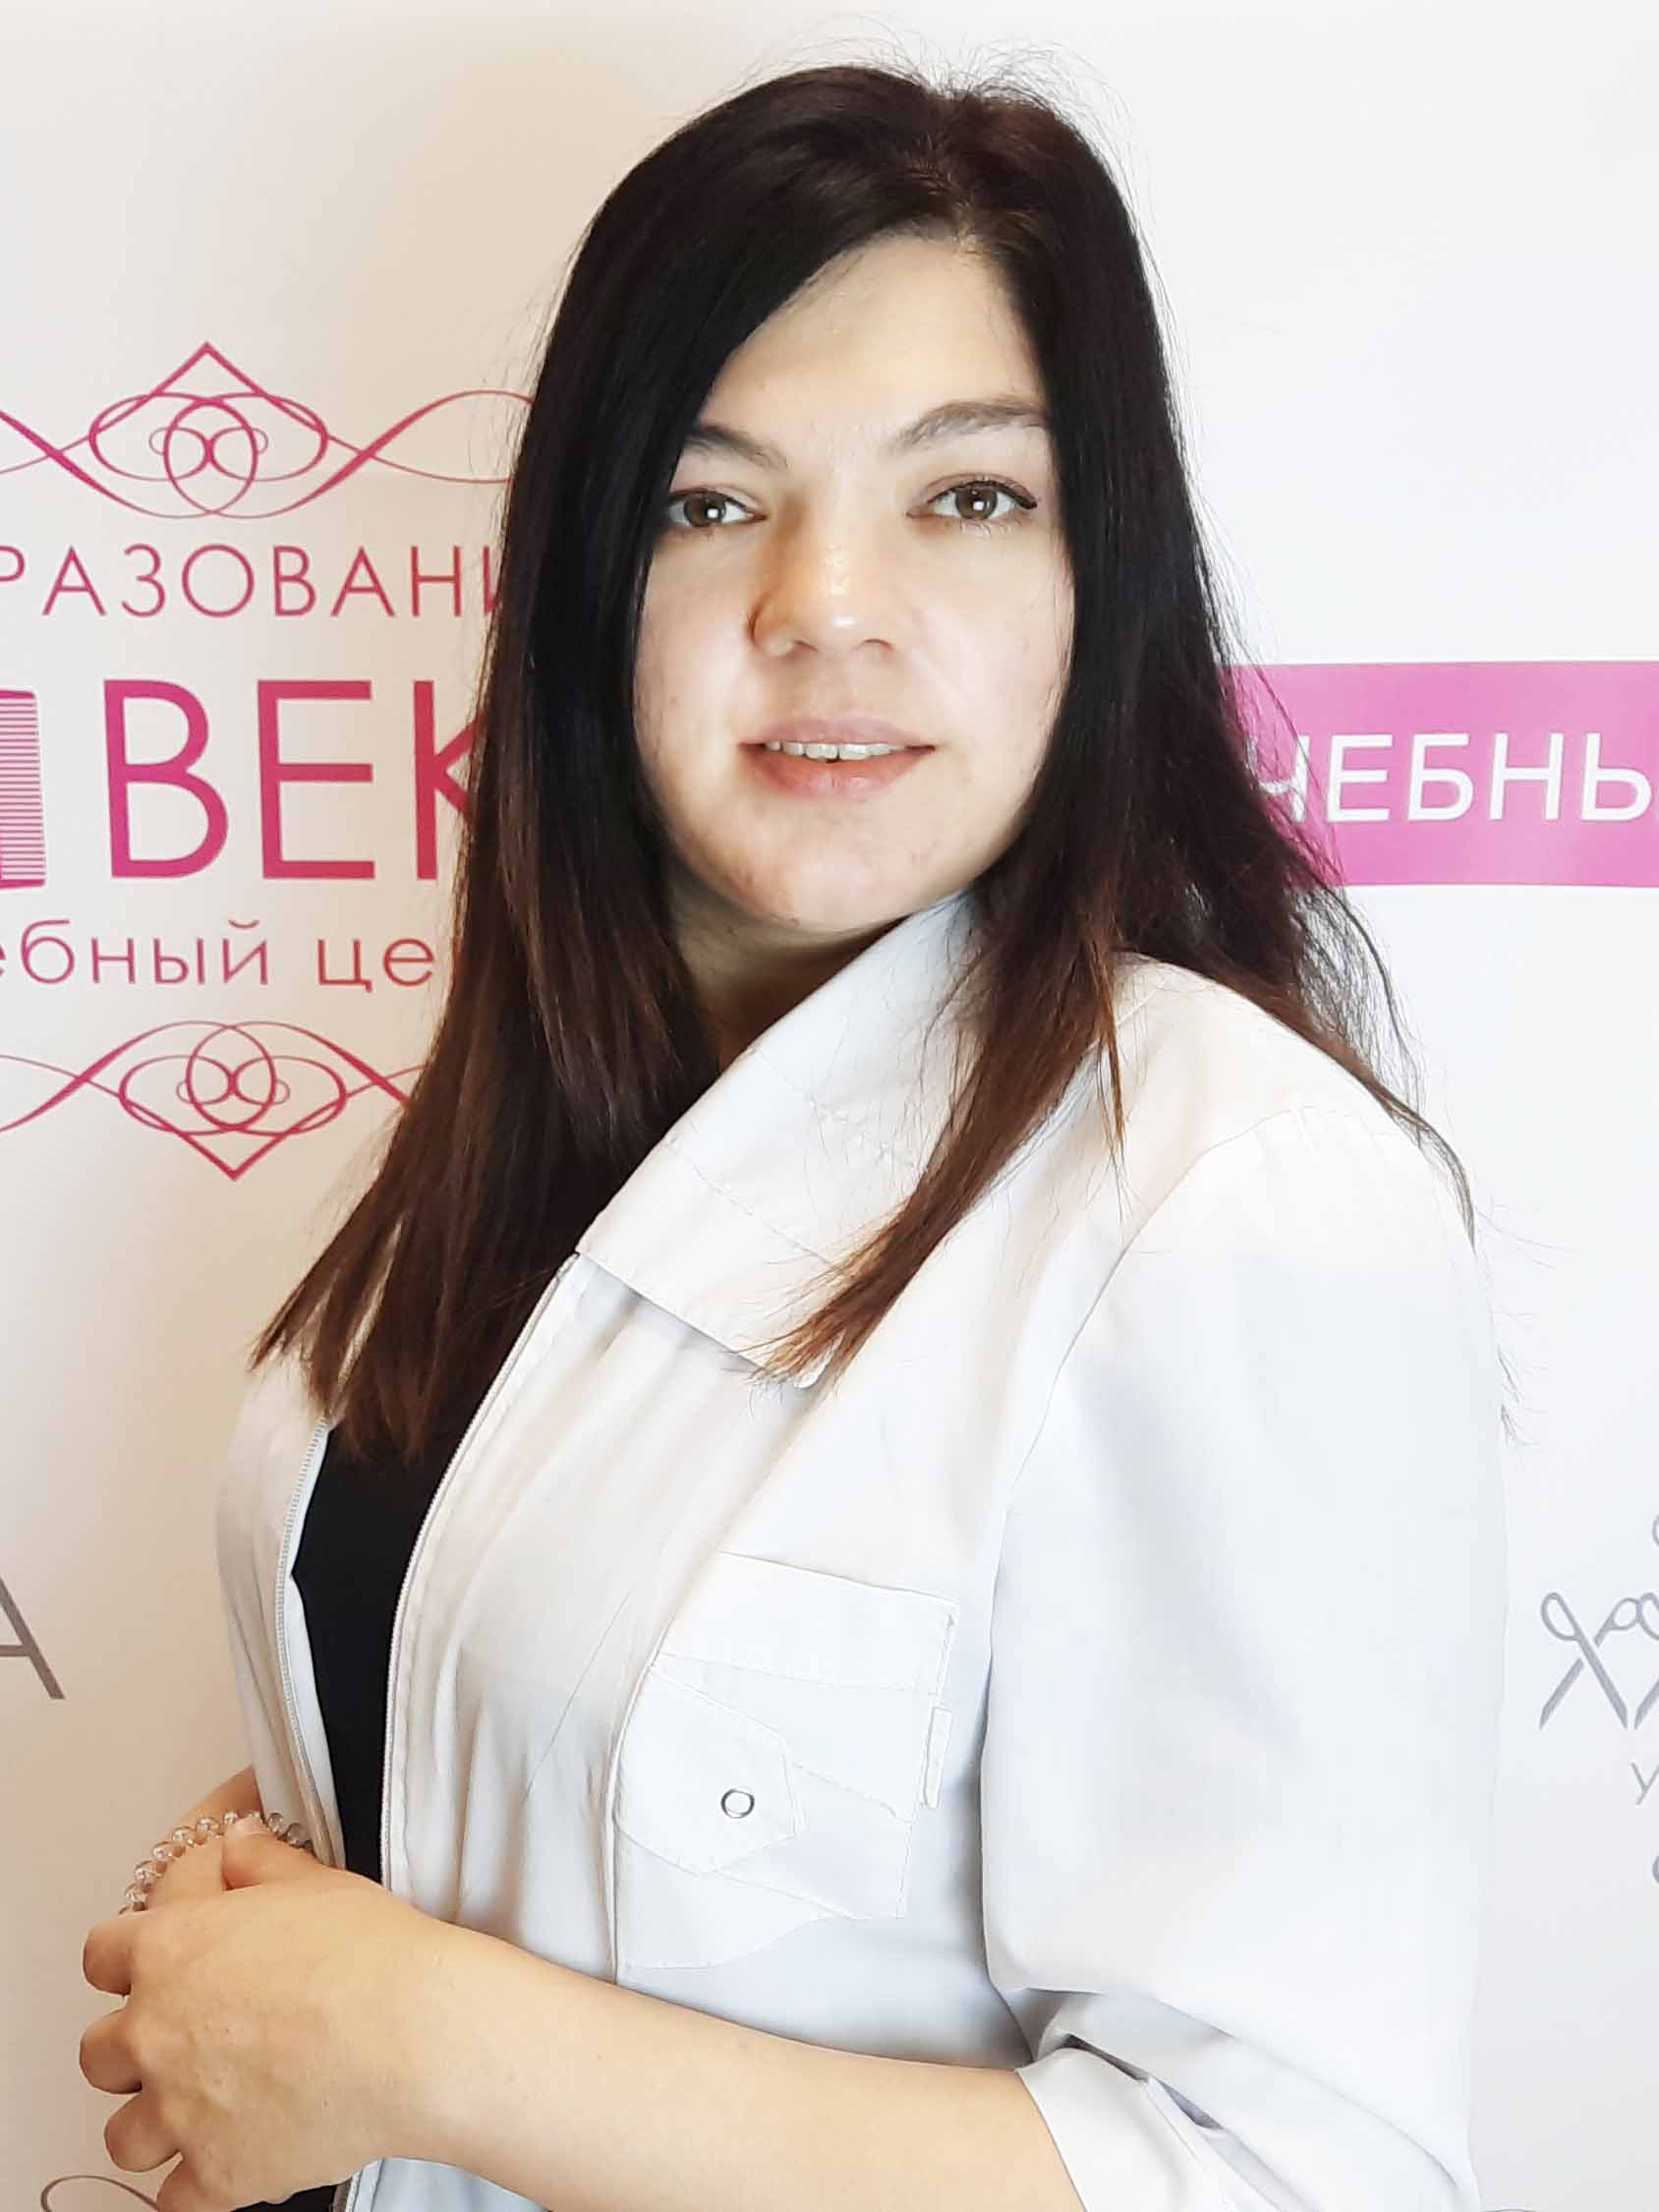 💊 Косметолог-эстетист обучение онлайн по всей России